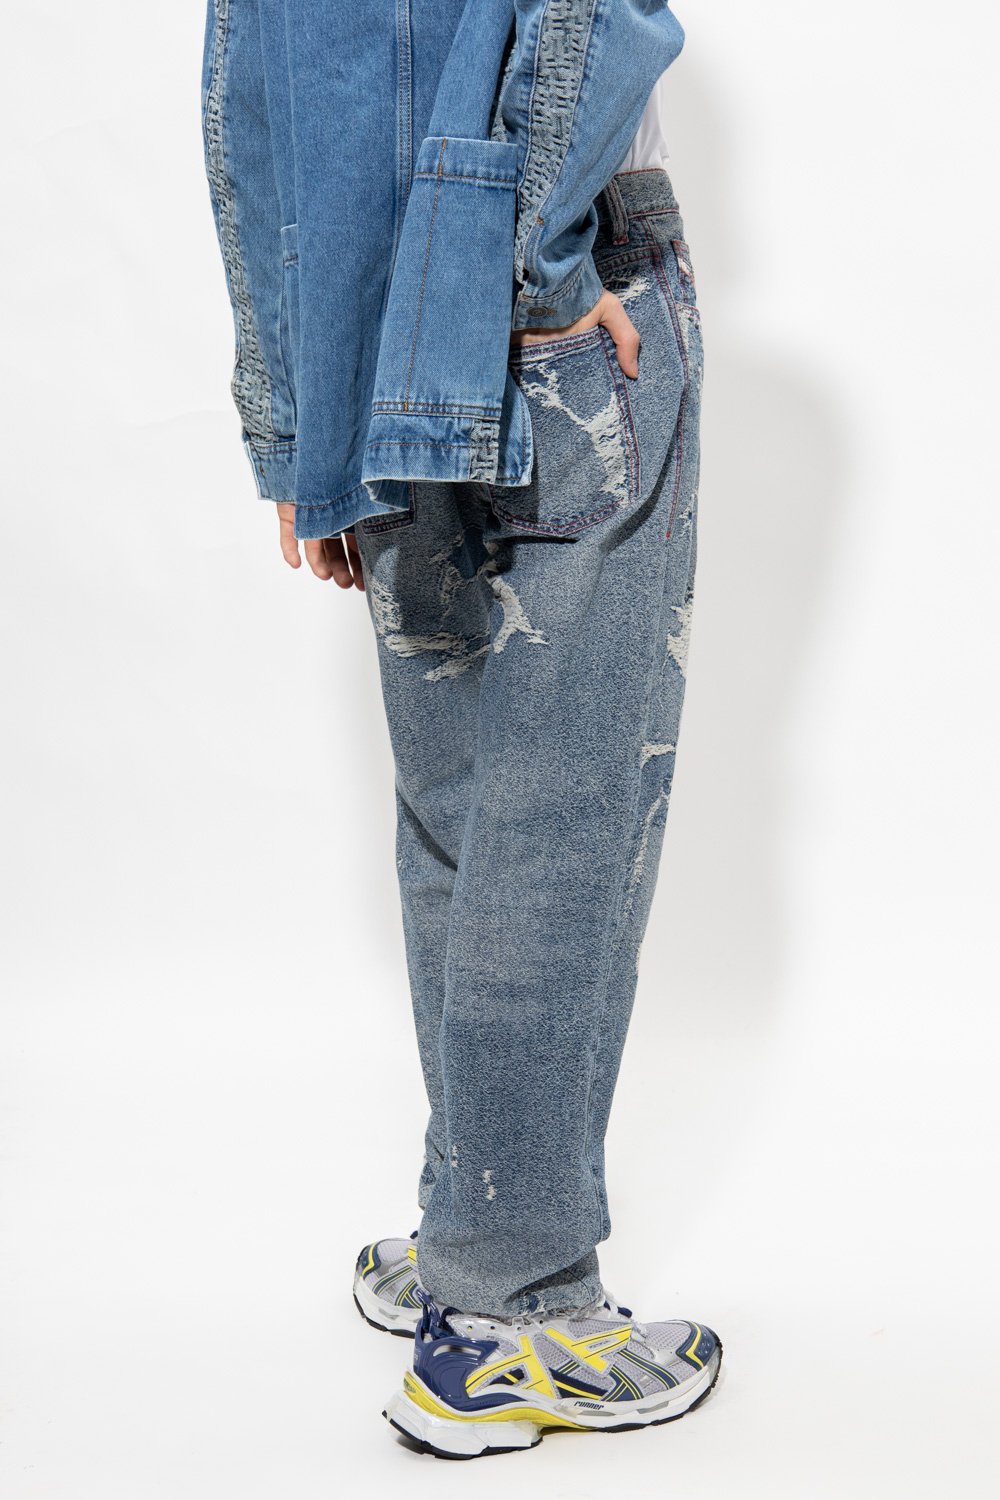 Diesel ‘2010 L.32’ jeans